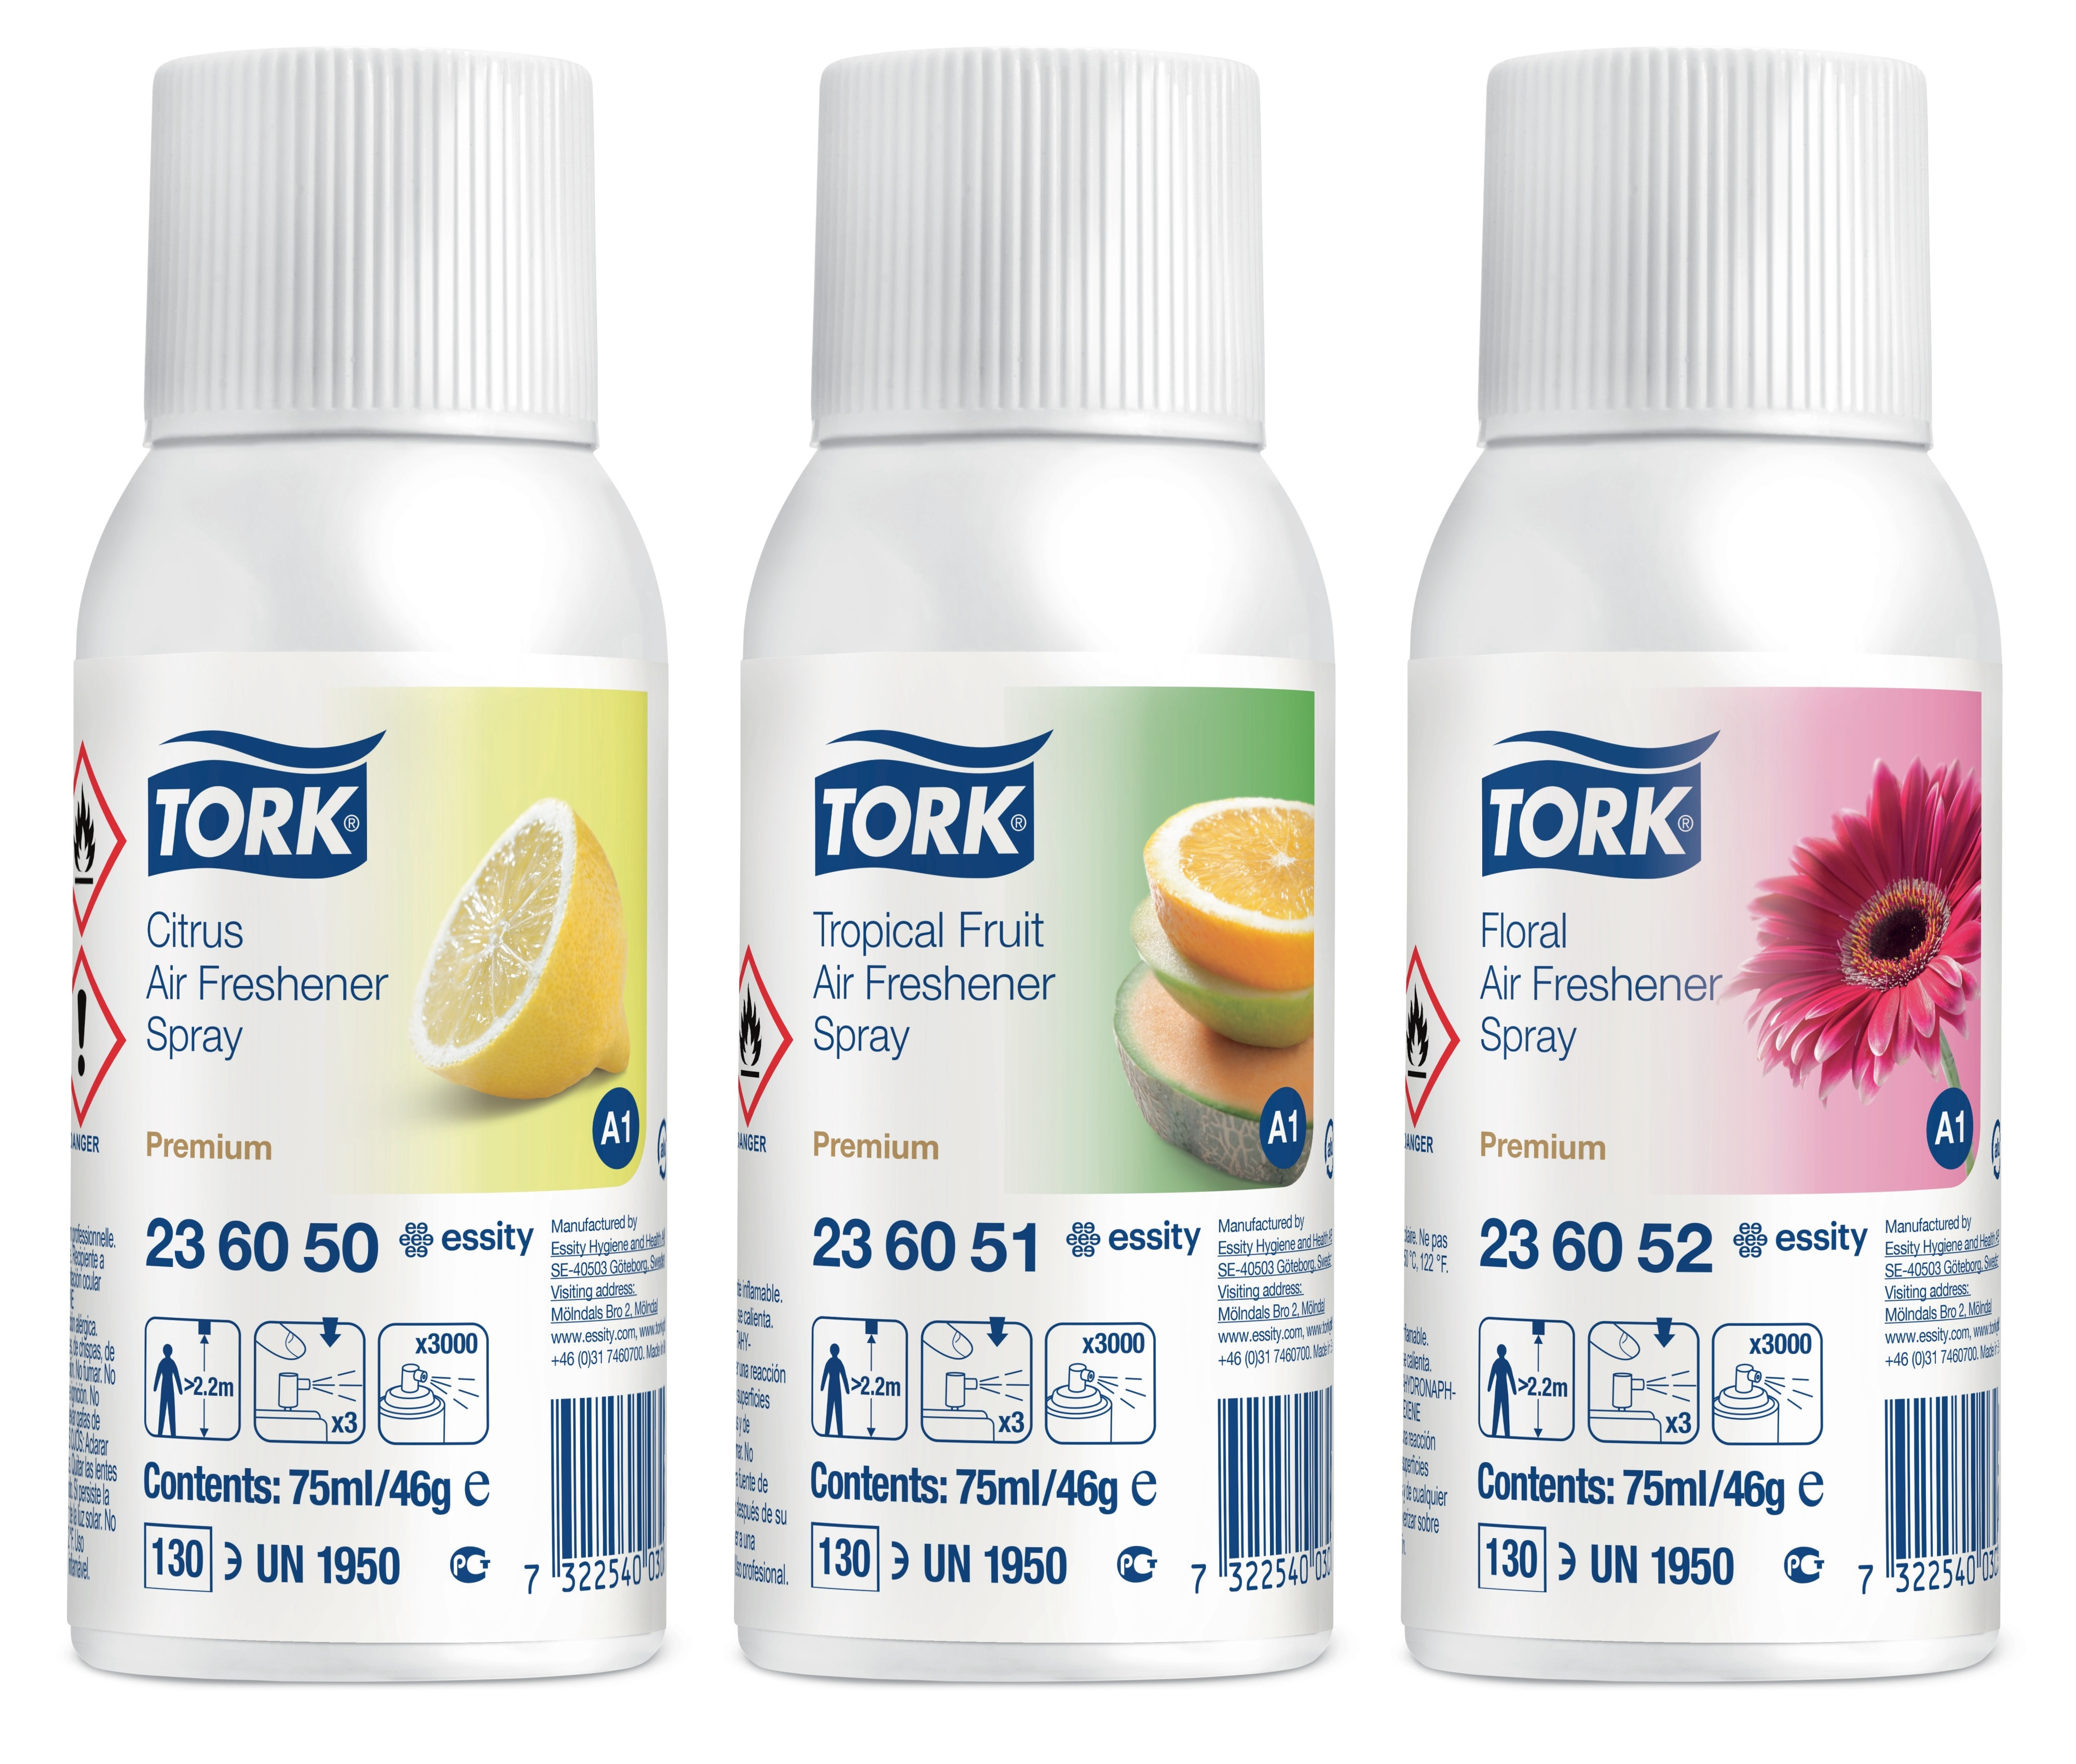 TORK Airfreshener A1 Blandet 12 stk Refill Citrus, Blomst og Tropisk(236056)